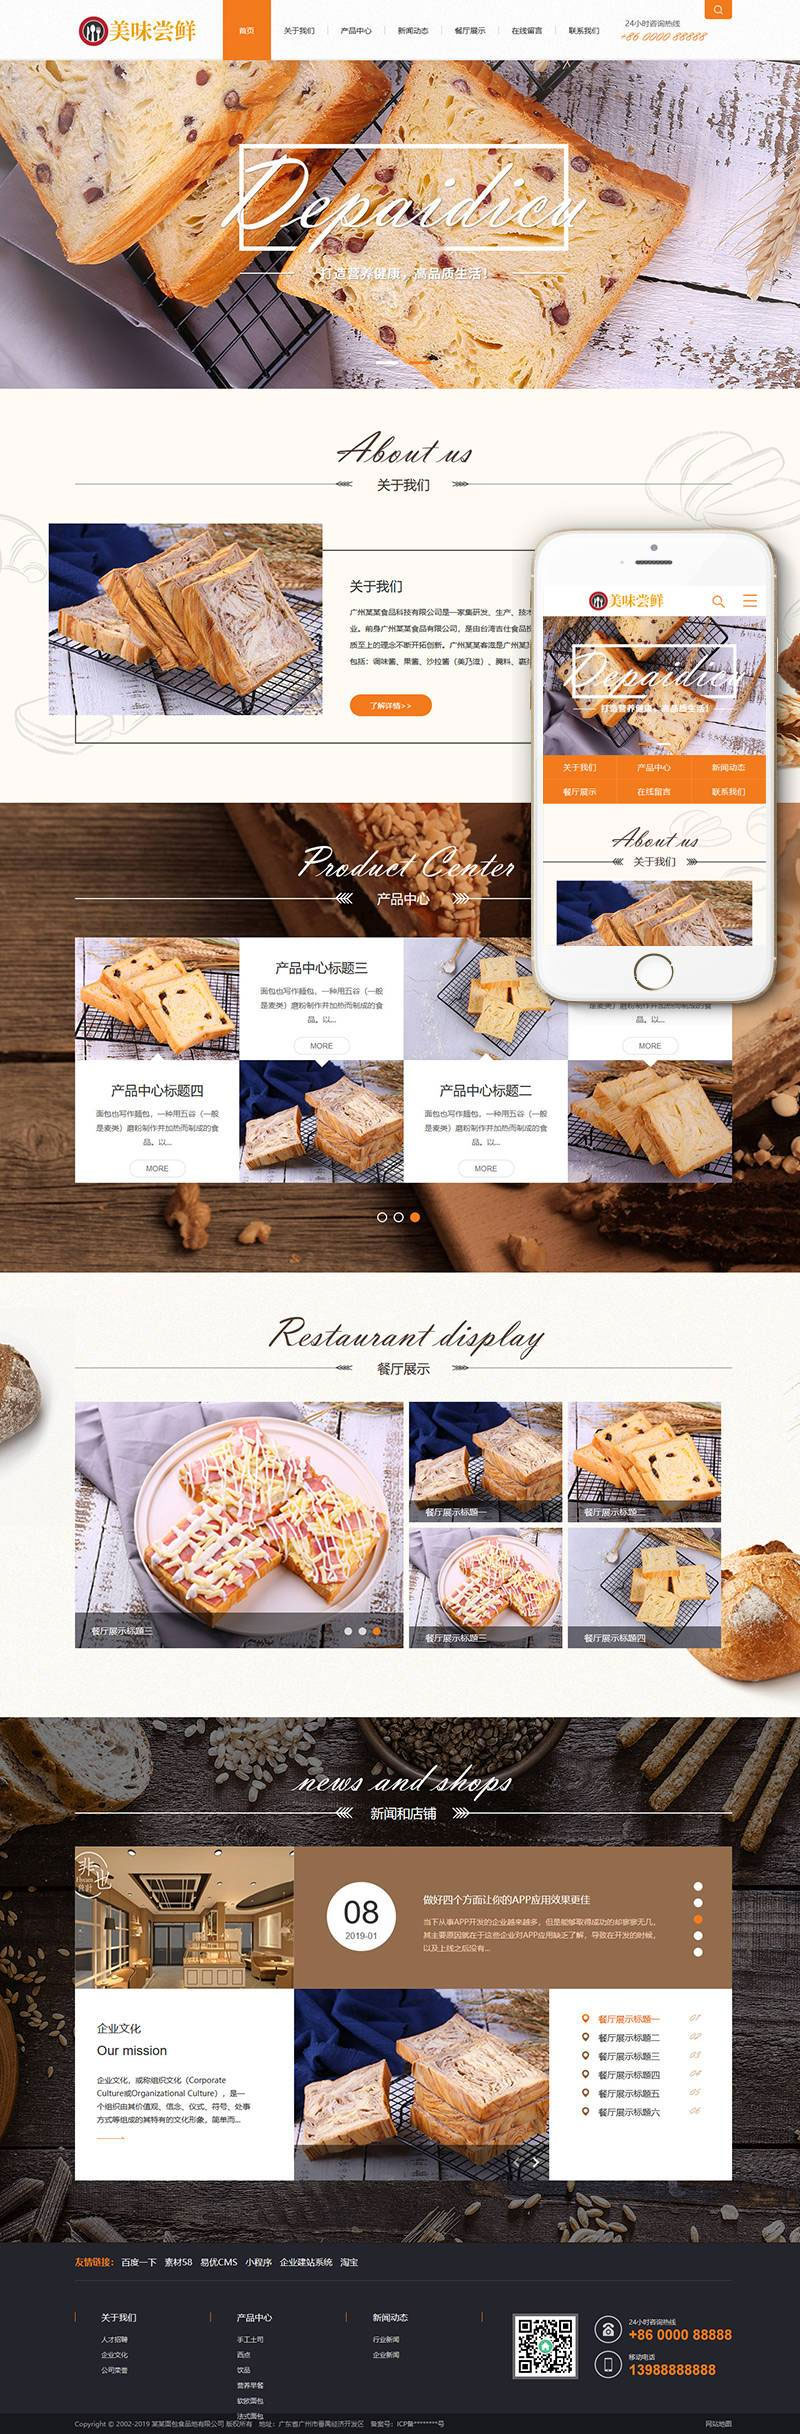 蛋糕面包食物公司网站源码 织梦dedecms模板 (带手机移动端)-零度空间